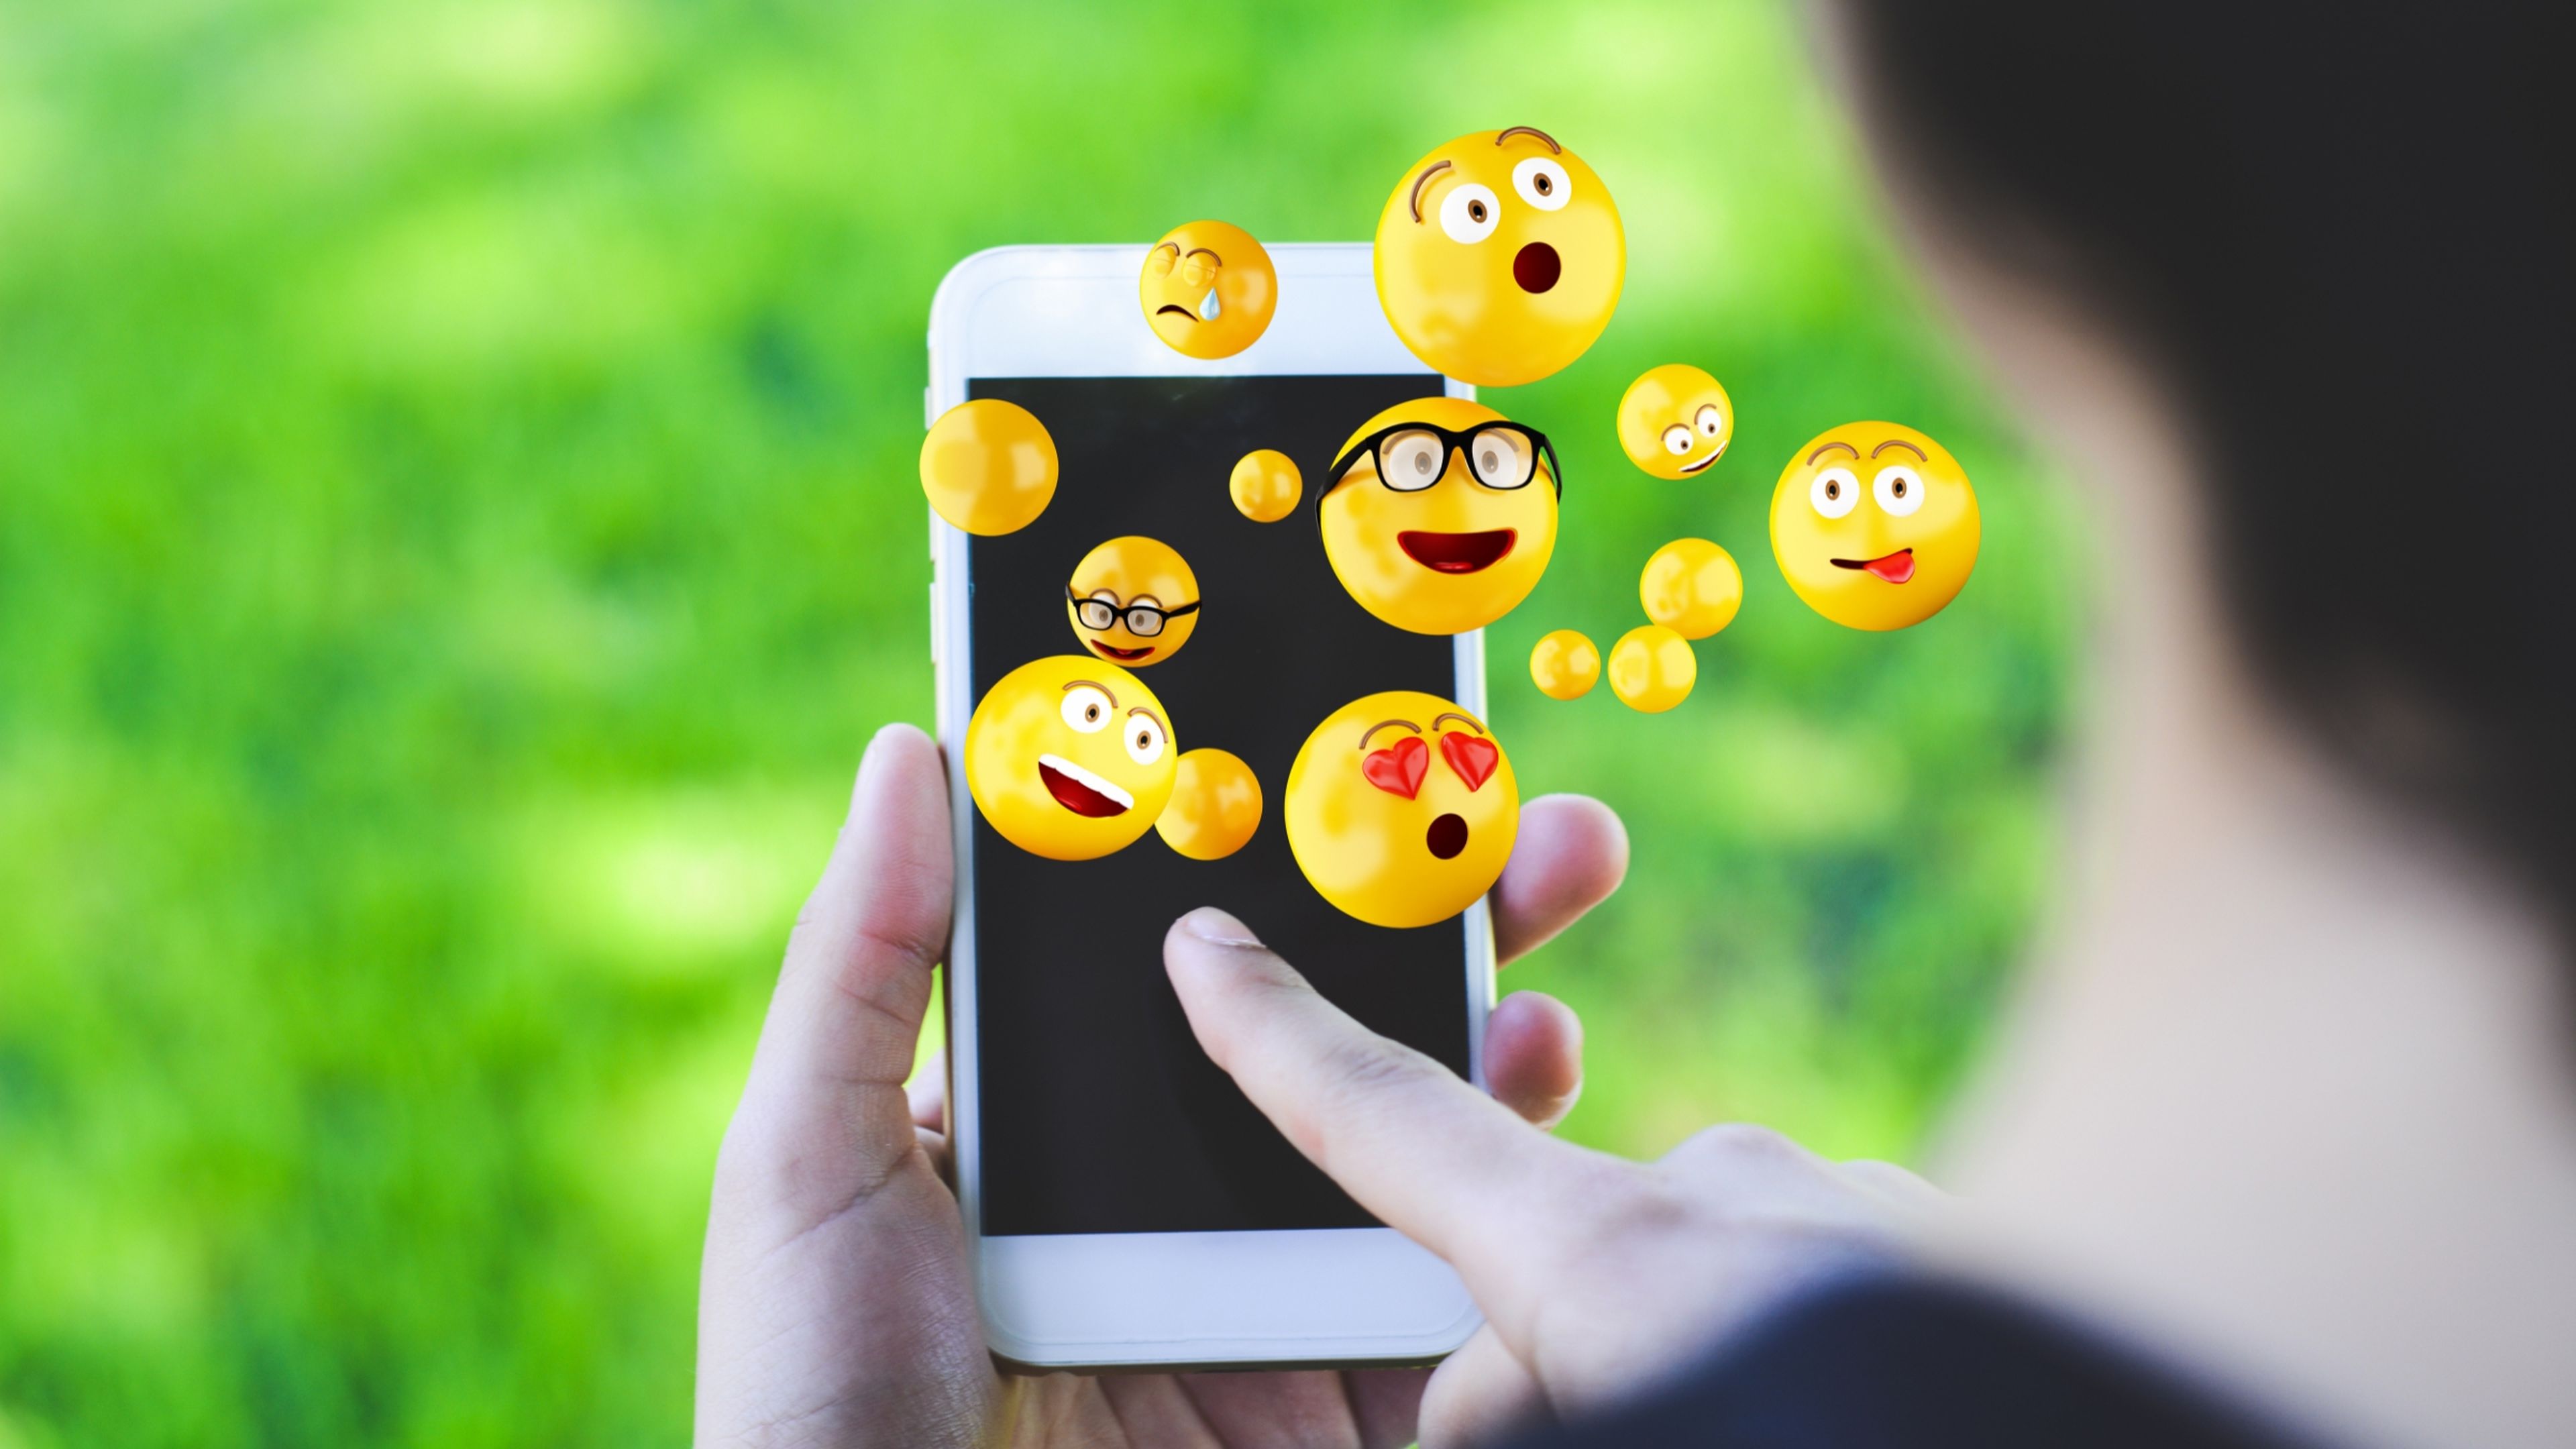 Significado de los emoticonos: qué quiere decir cada emoji